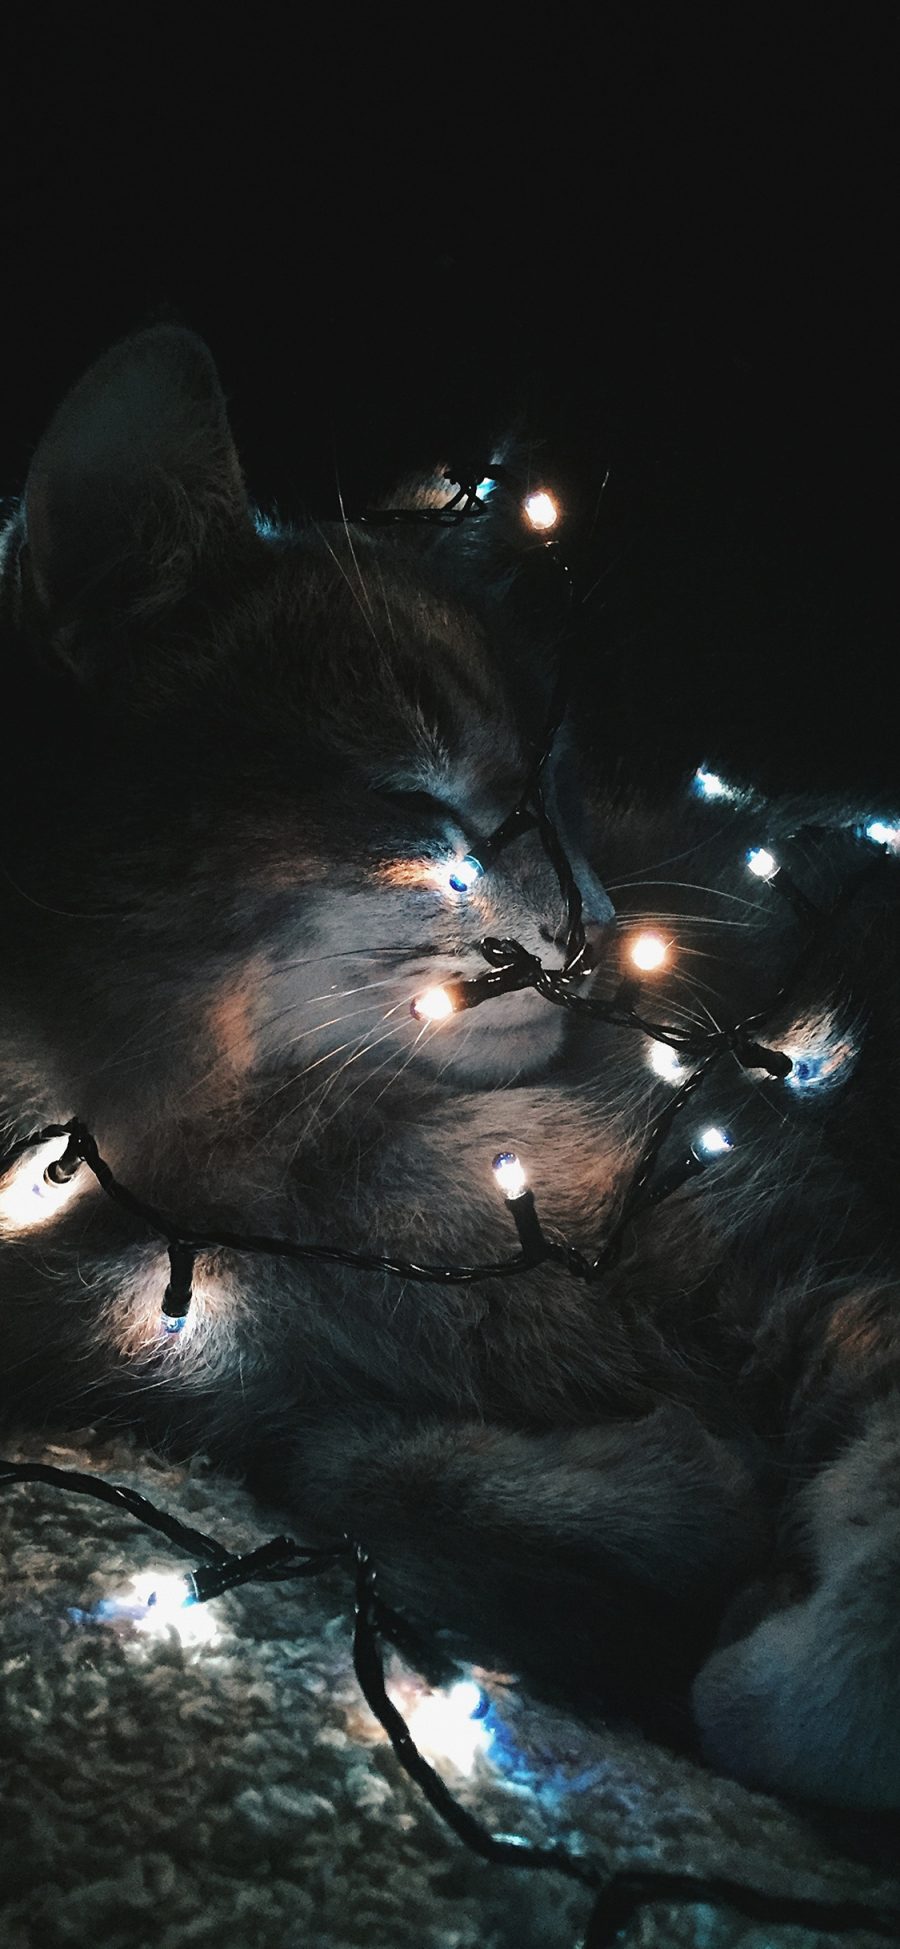 [2436×1125]宠物 猫咪 灯光 黑暗 苹果手机壁纸图片